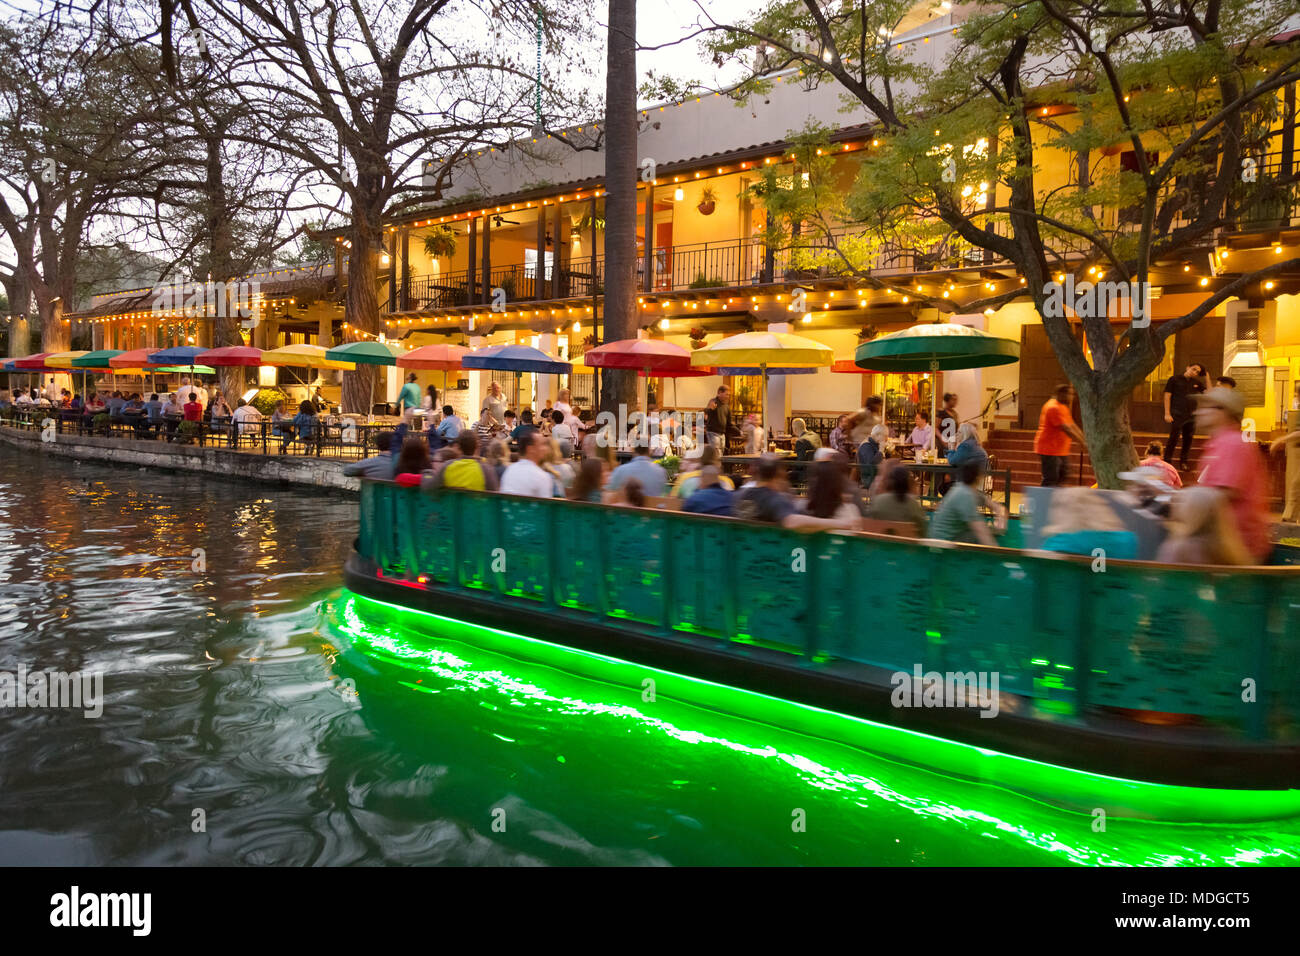 San Antonio River Walk - - Un barco turístico sobre el río San Antonio pasando restaurantes al anochecer; San Antonio Riverwalk de San Antonio, Texas, EE.UU. Foto de stock